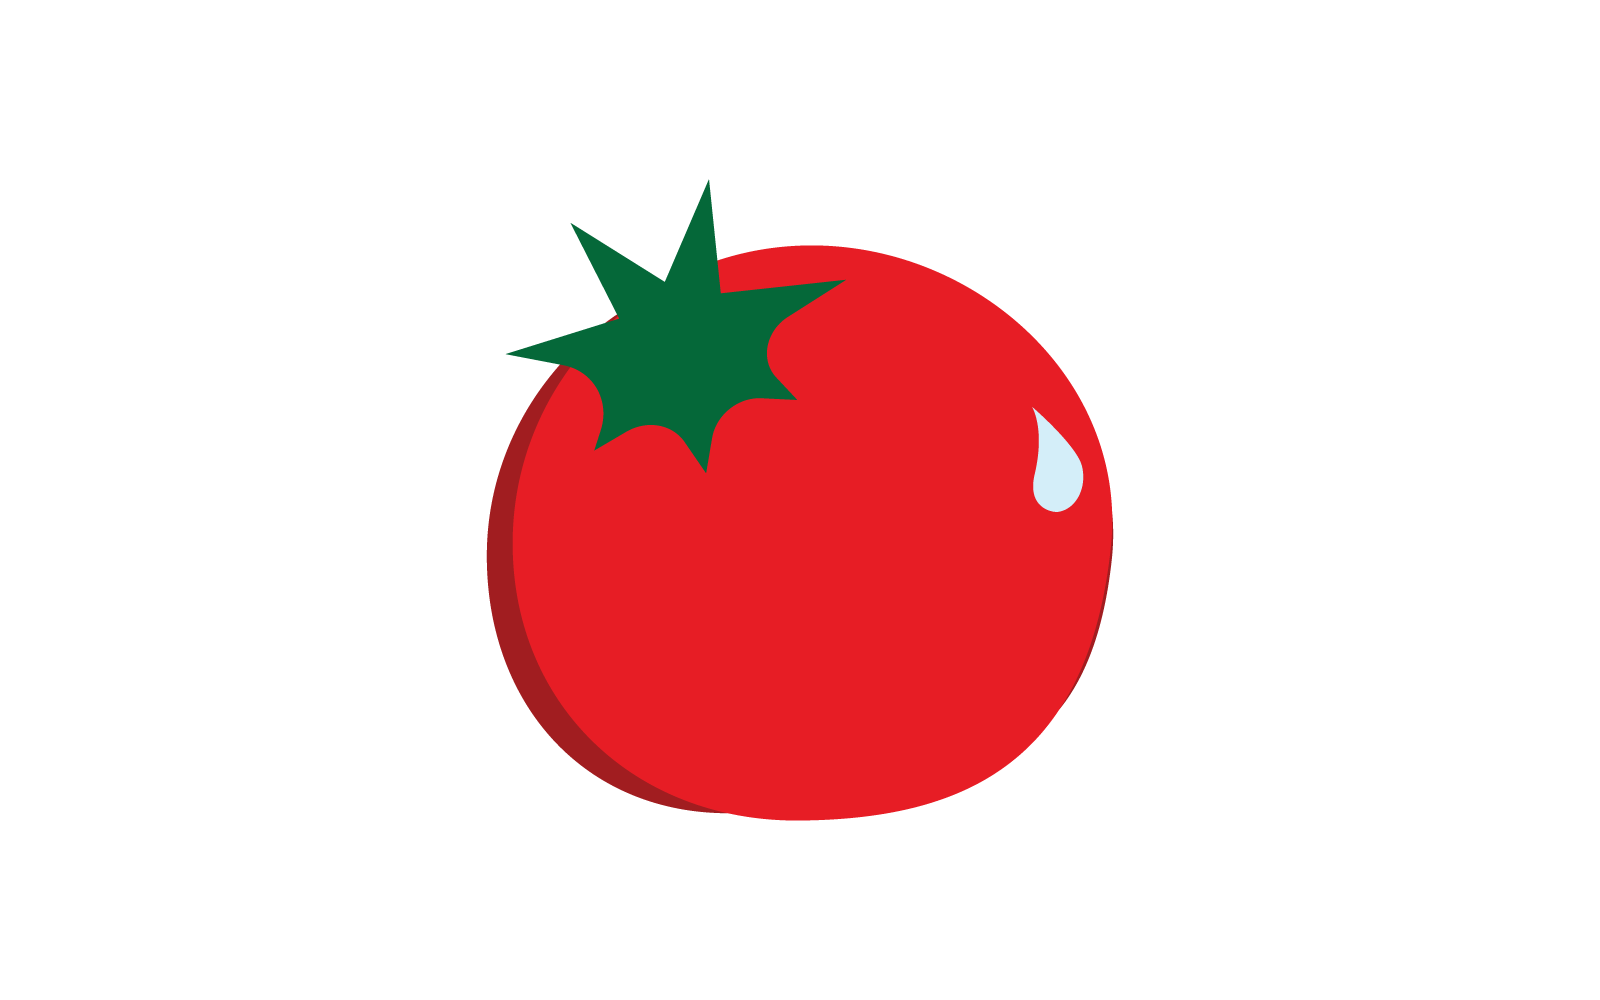 Tomato icon vector ilustration template